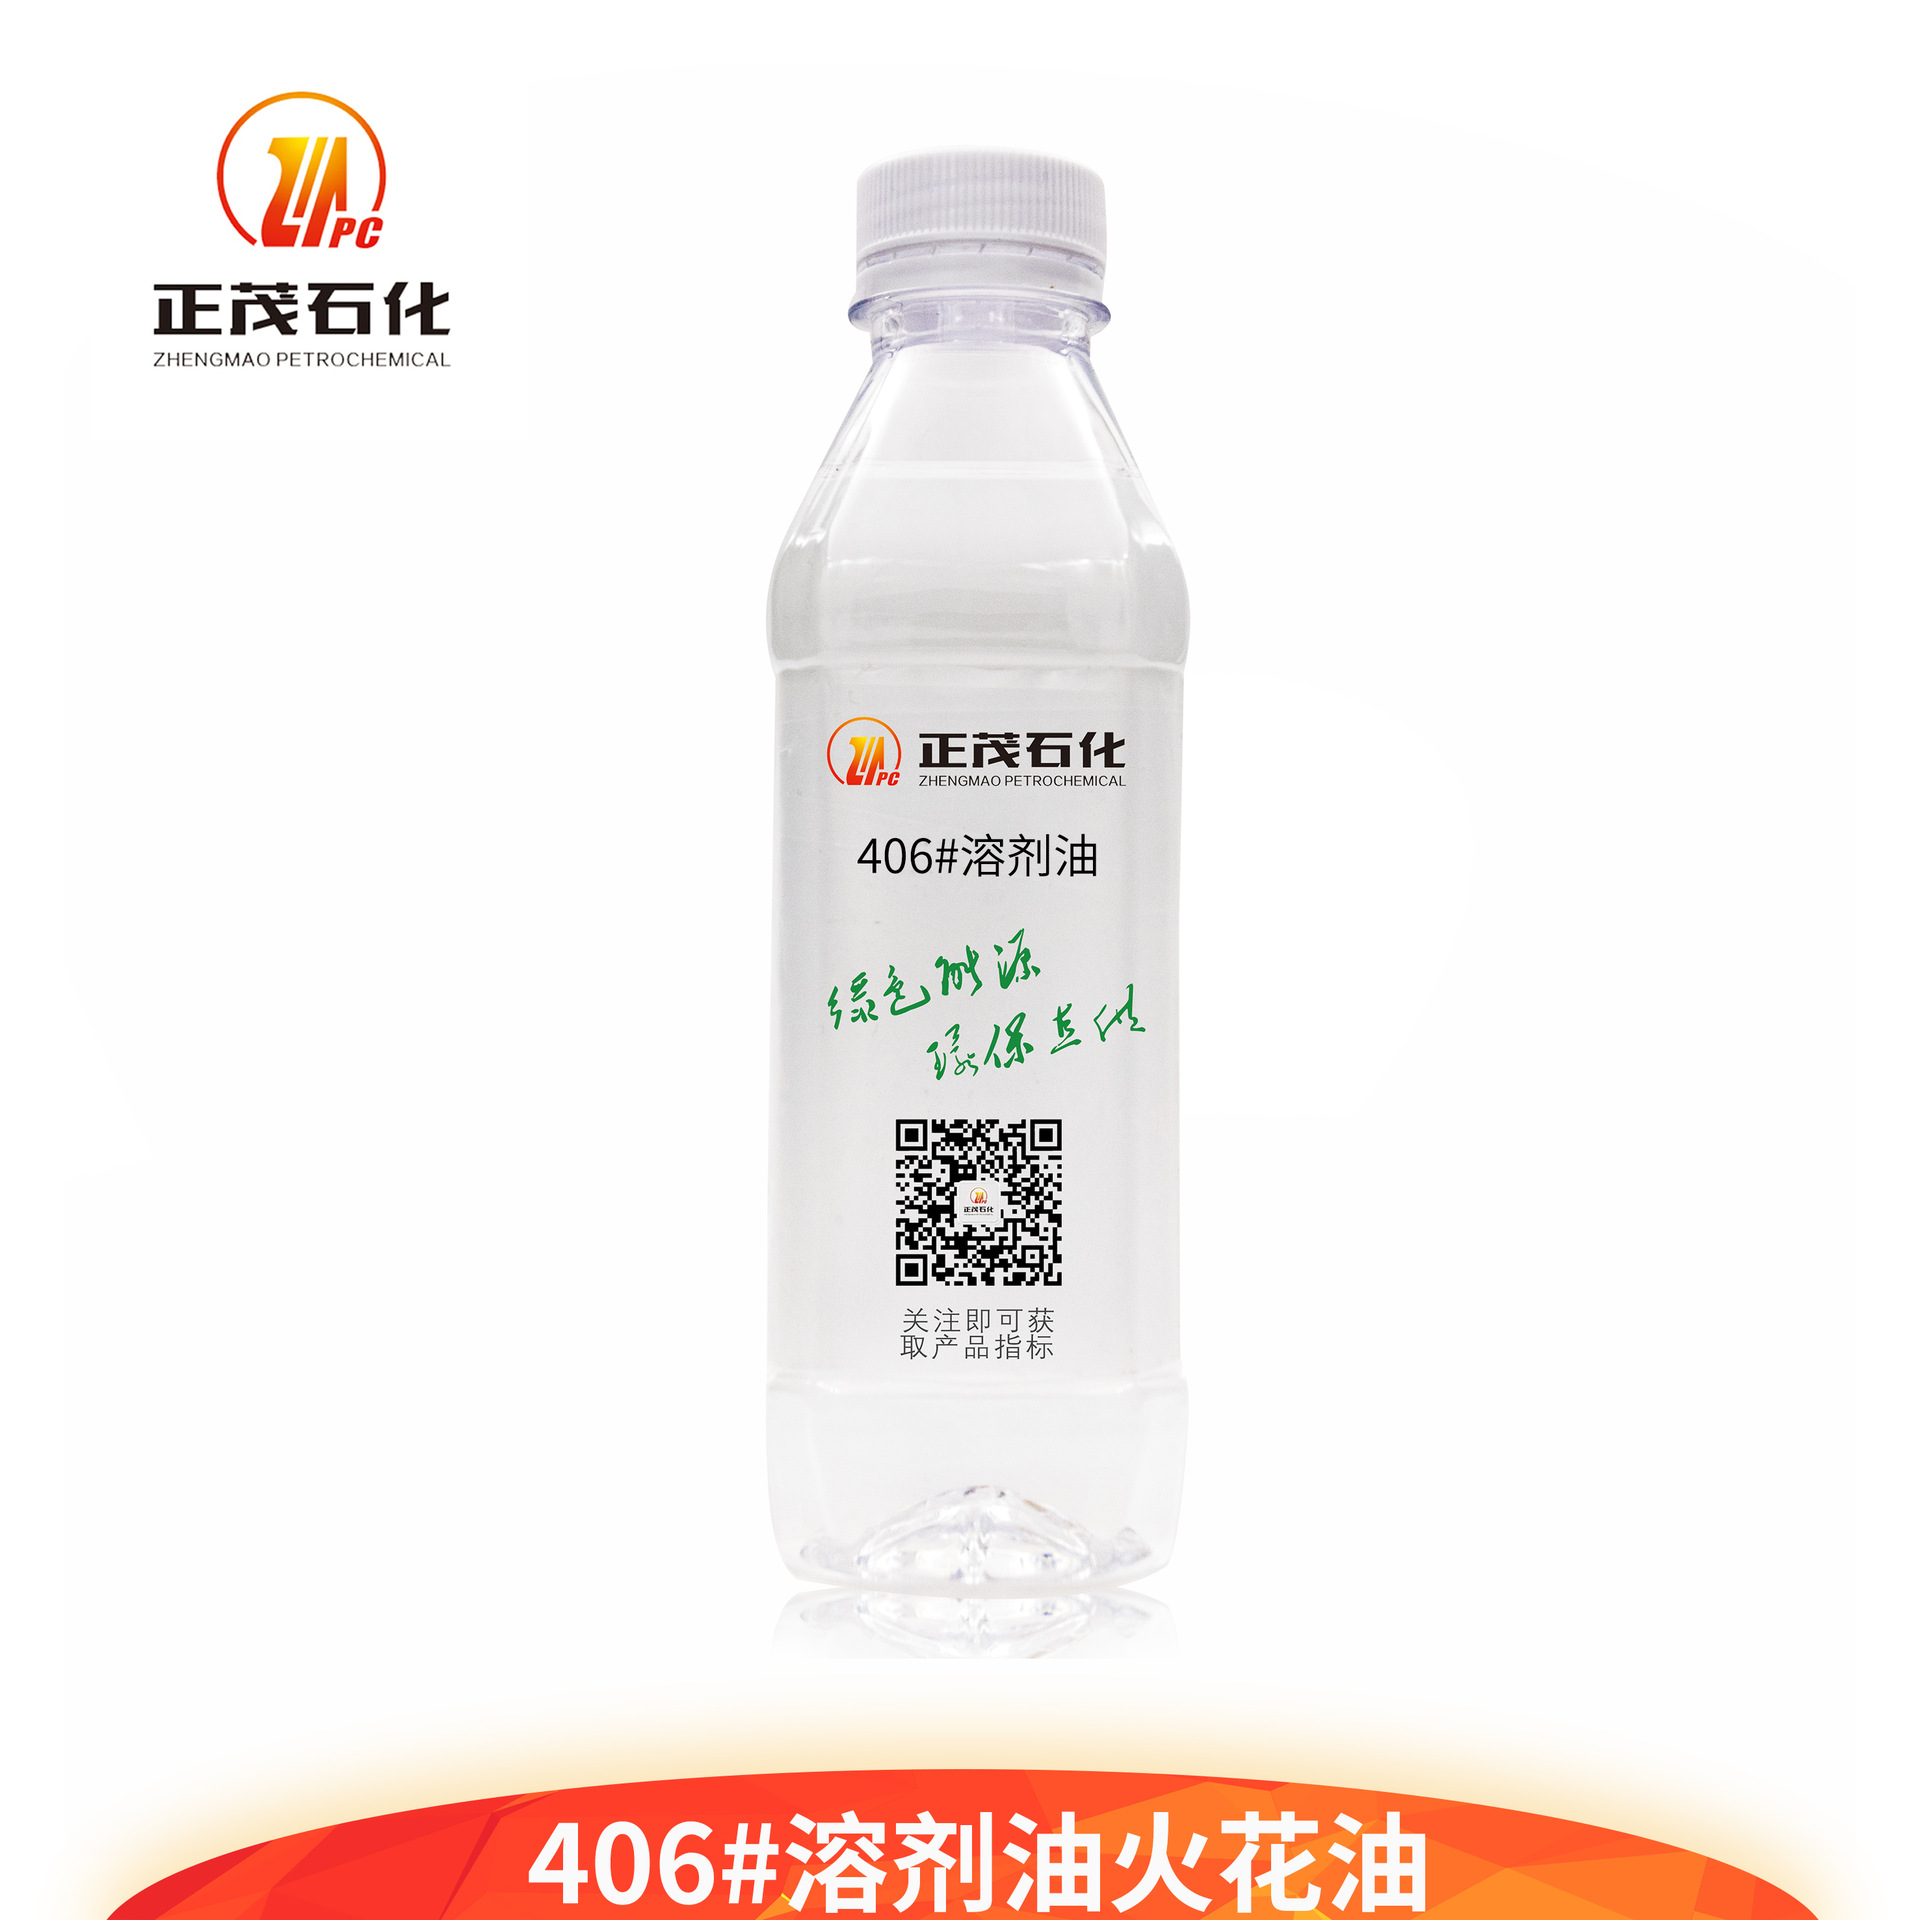 406#環保型通用溶劑油丨噴霧氣霧劑 農藥原料